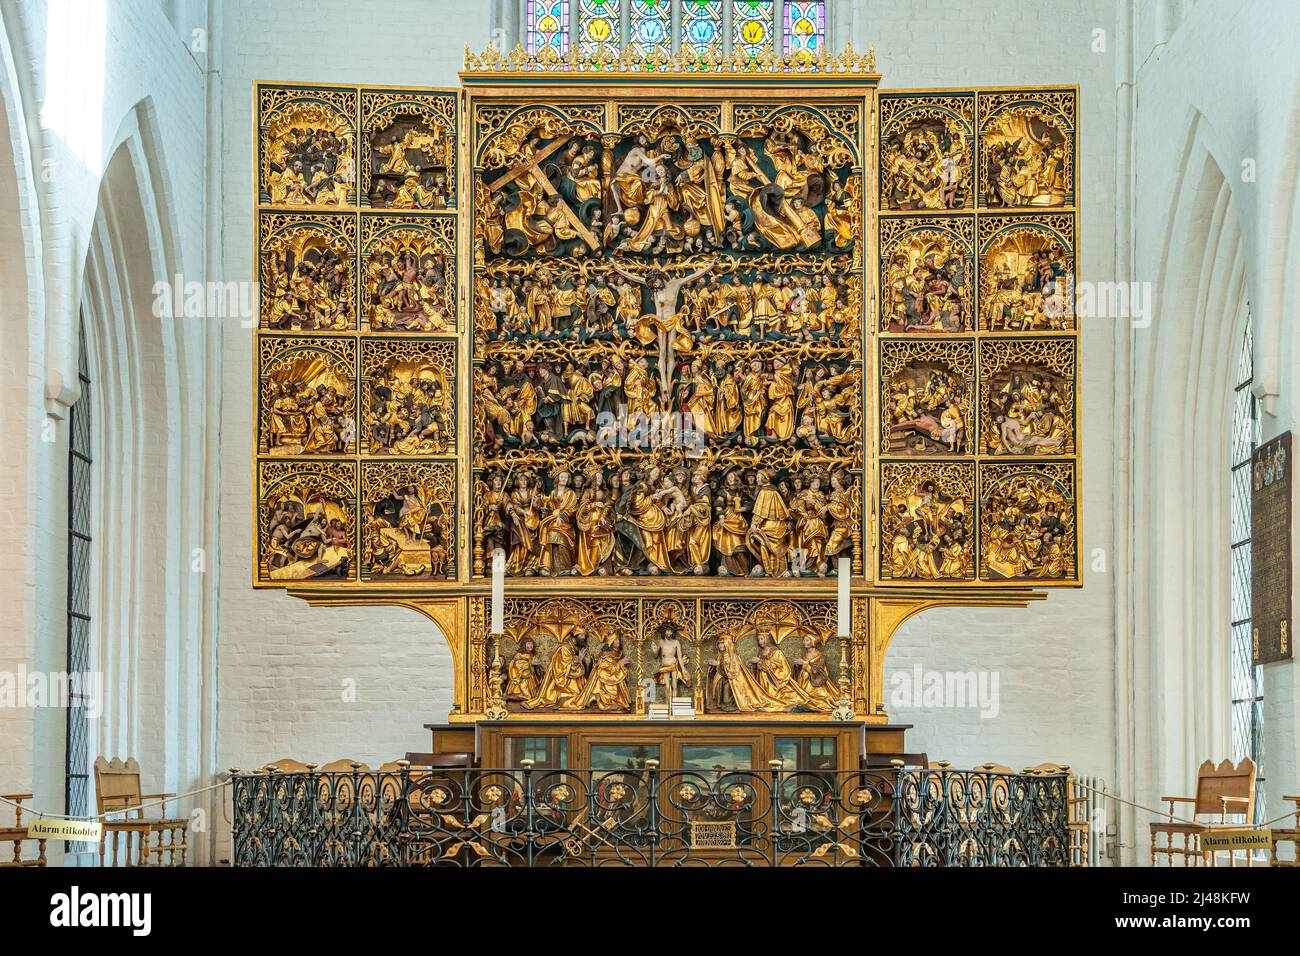 Das Altarbild, das die Passion Christi darstellt, in einem 23 Karat Blattgold in der Kathedrale von San Canuto in Odense. Odense, Fyn, Dänemark, Europa Stockfoto